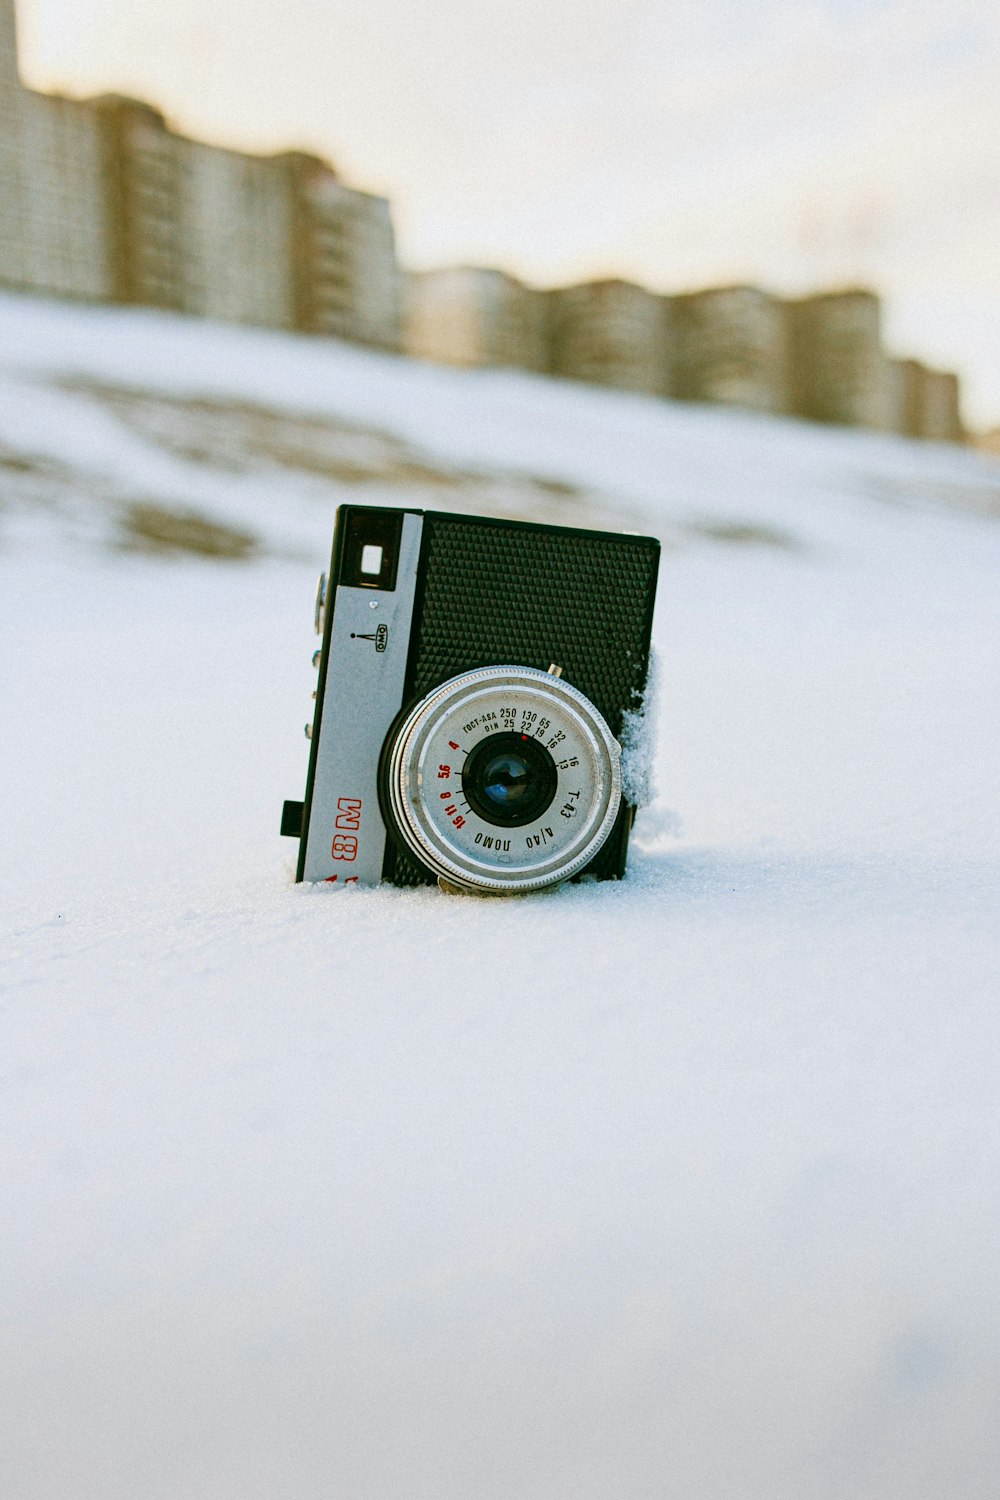 Schwarz-Silber-Kamera auf schneebedecktem Untergrund